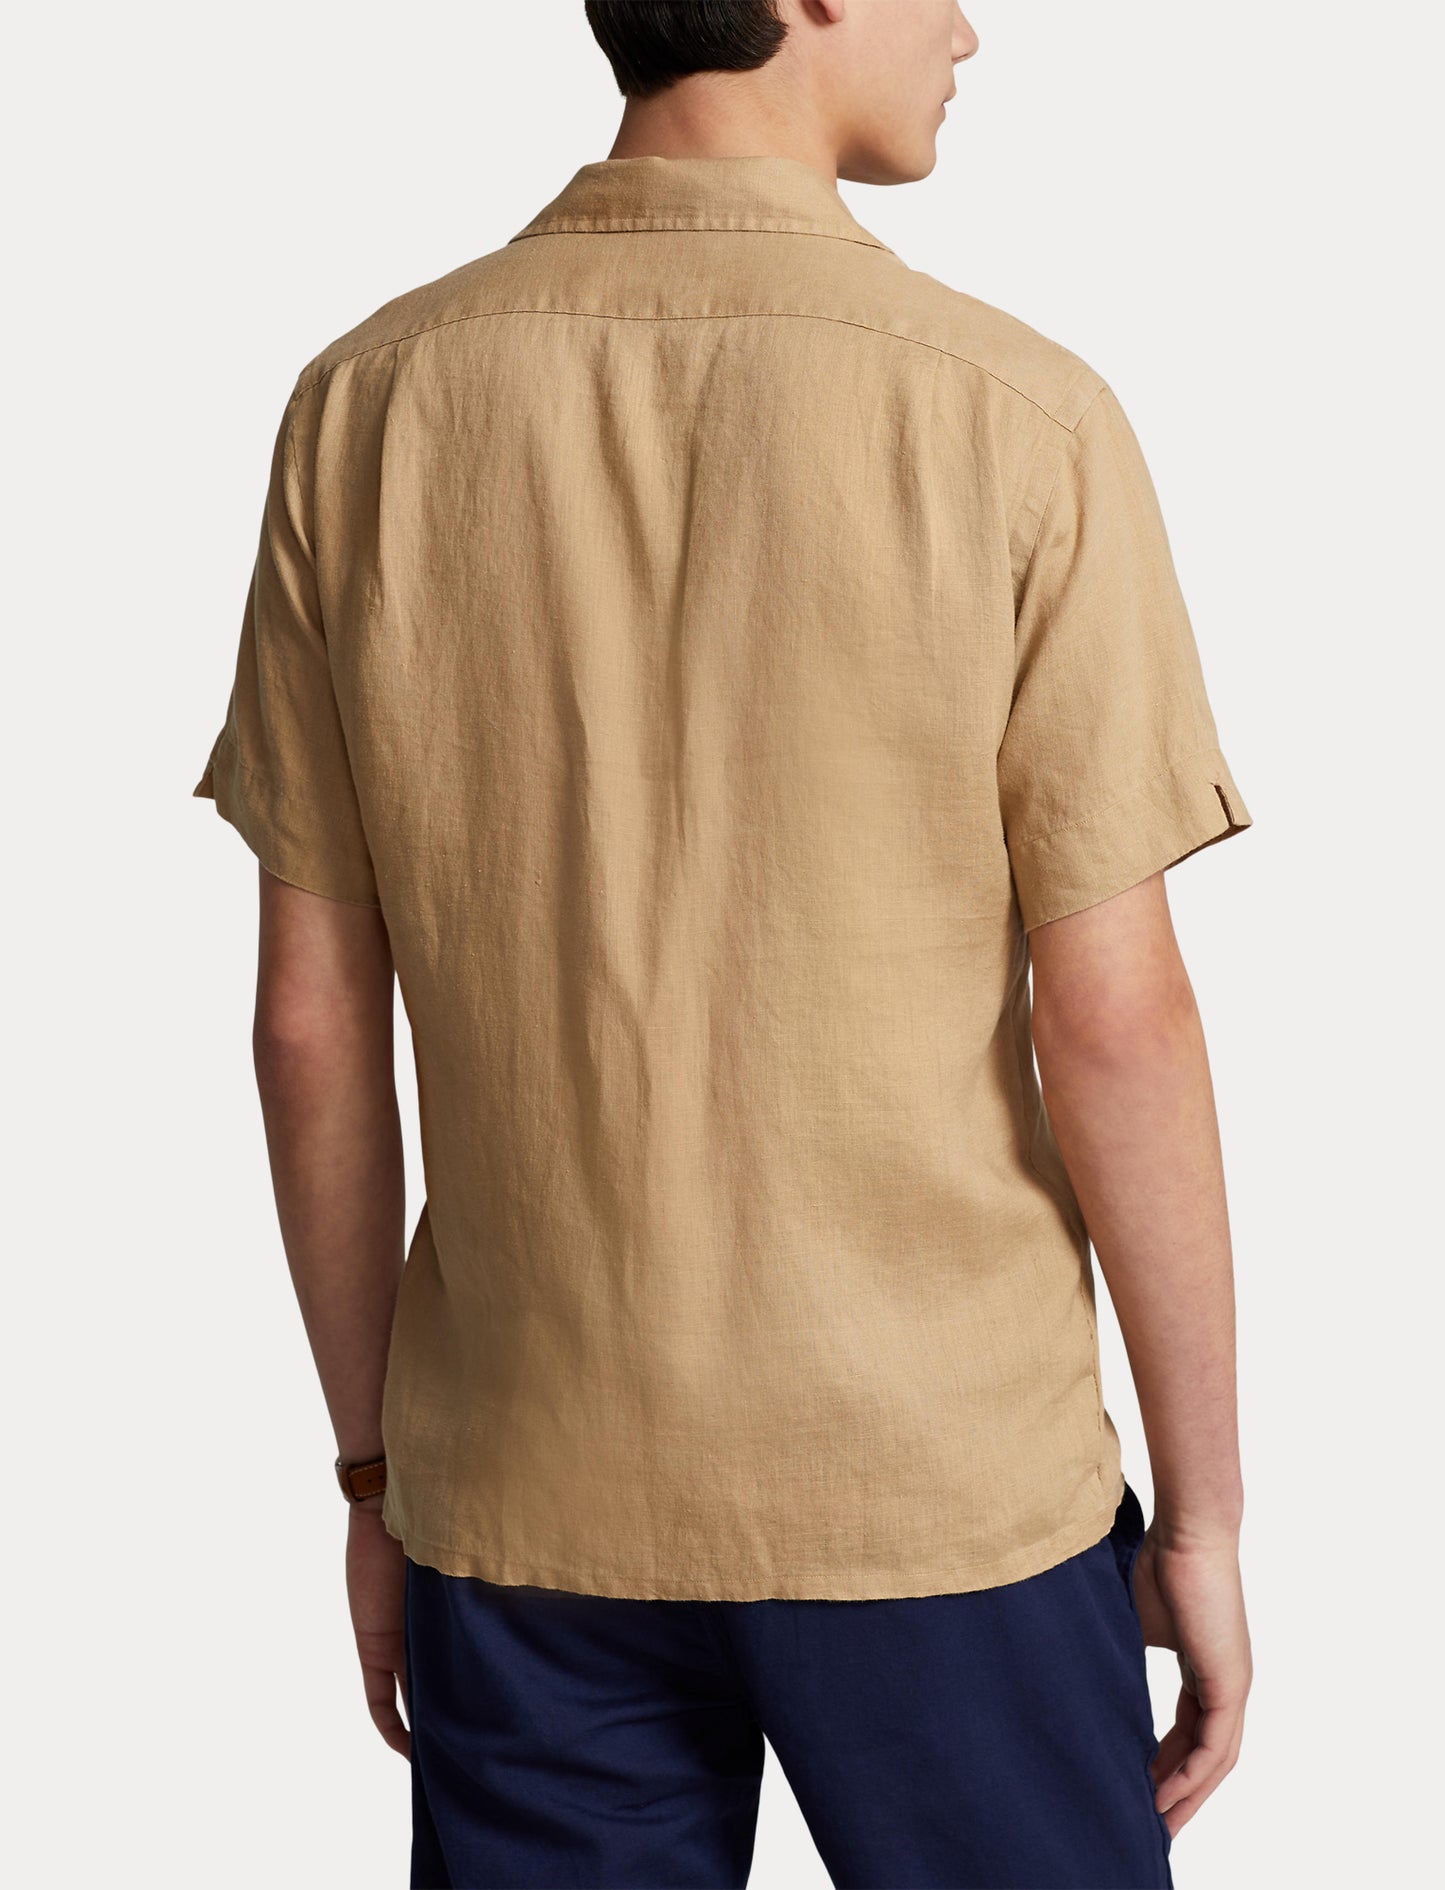 Polo Ralph Lauren SS Linen Sport Shirt Vintage Khaki